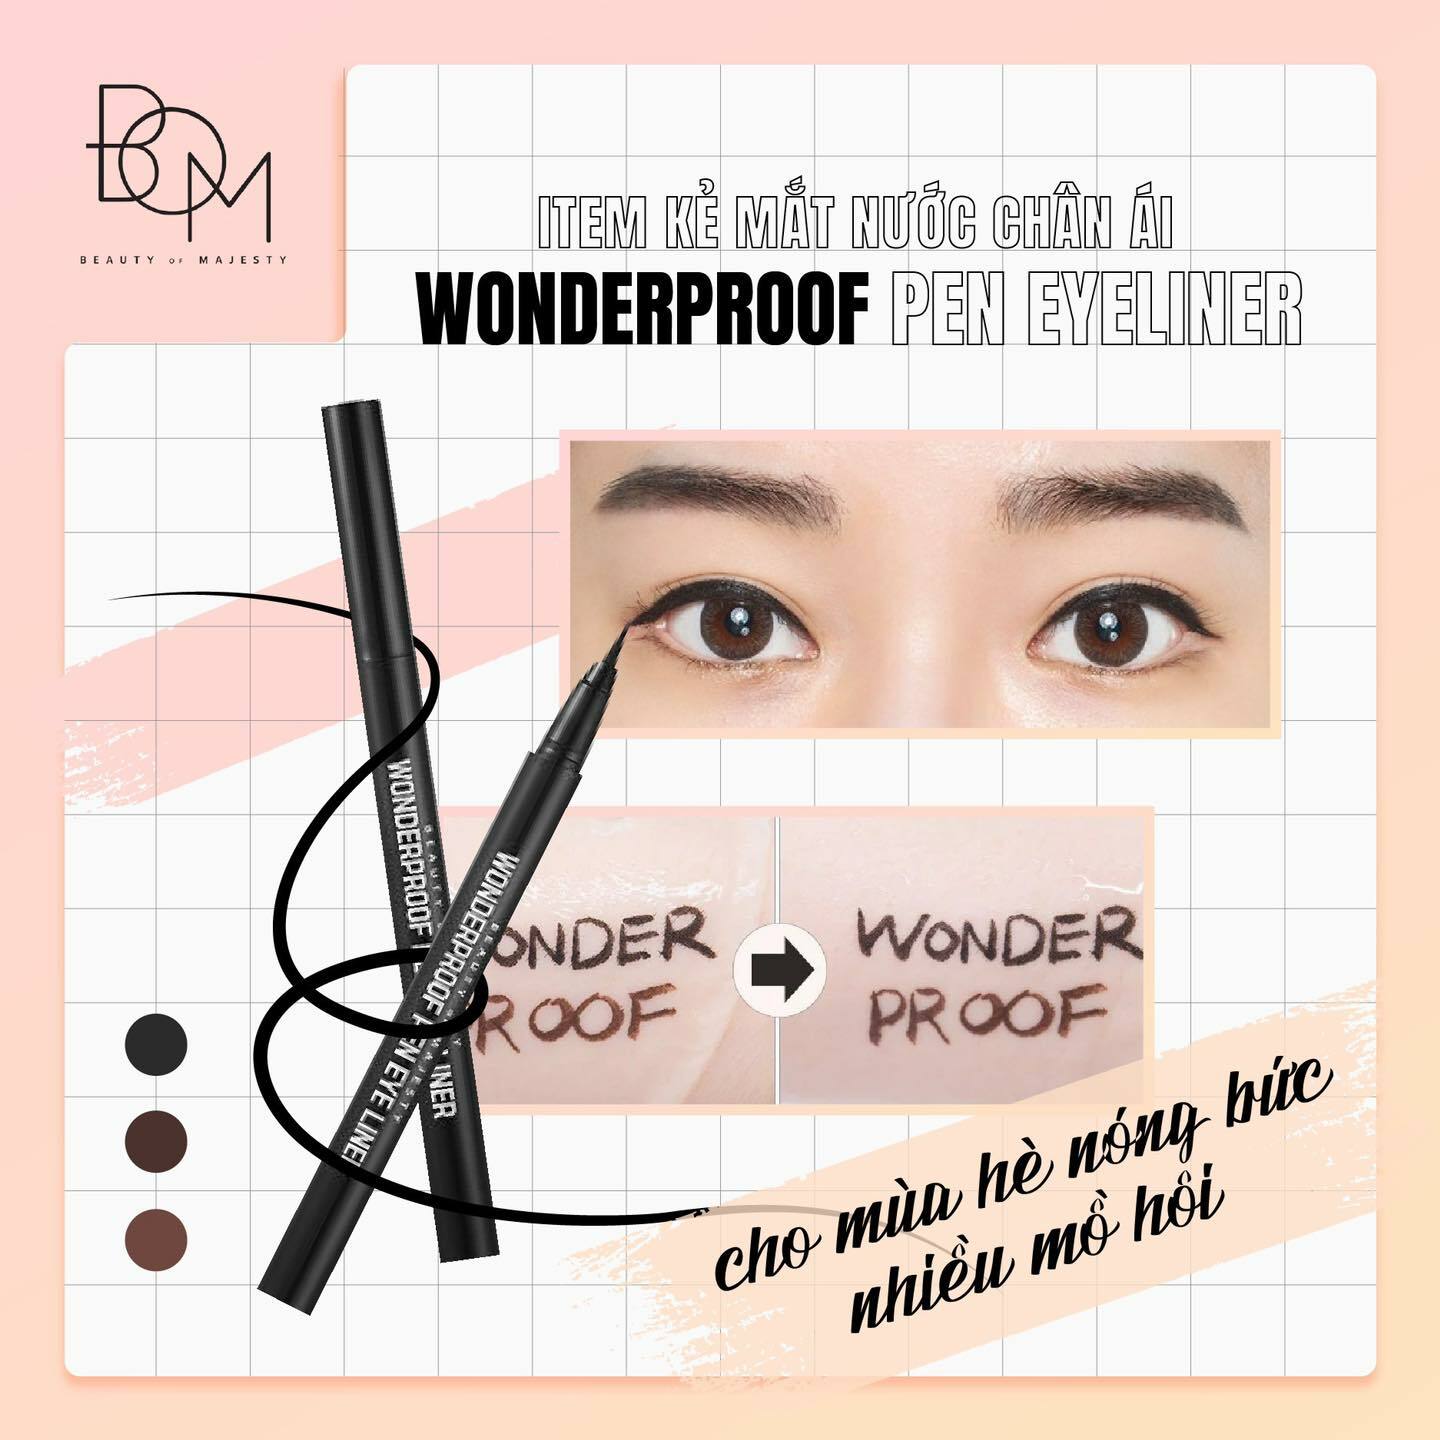 Sử dụng BOM WONDERPROOF PEN EYE LINER – 0.5 C sẽ cho bạn đôi mắt hoàn hảo và vẽ eyeliner dễ dàng hơn